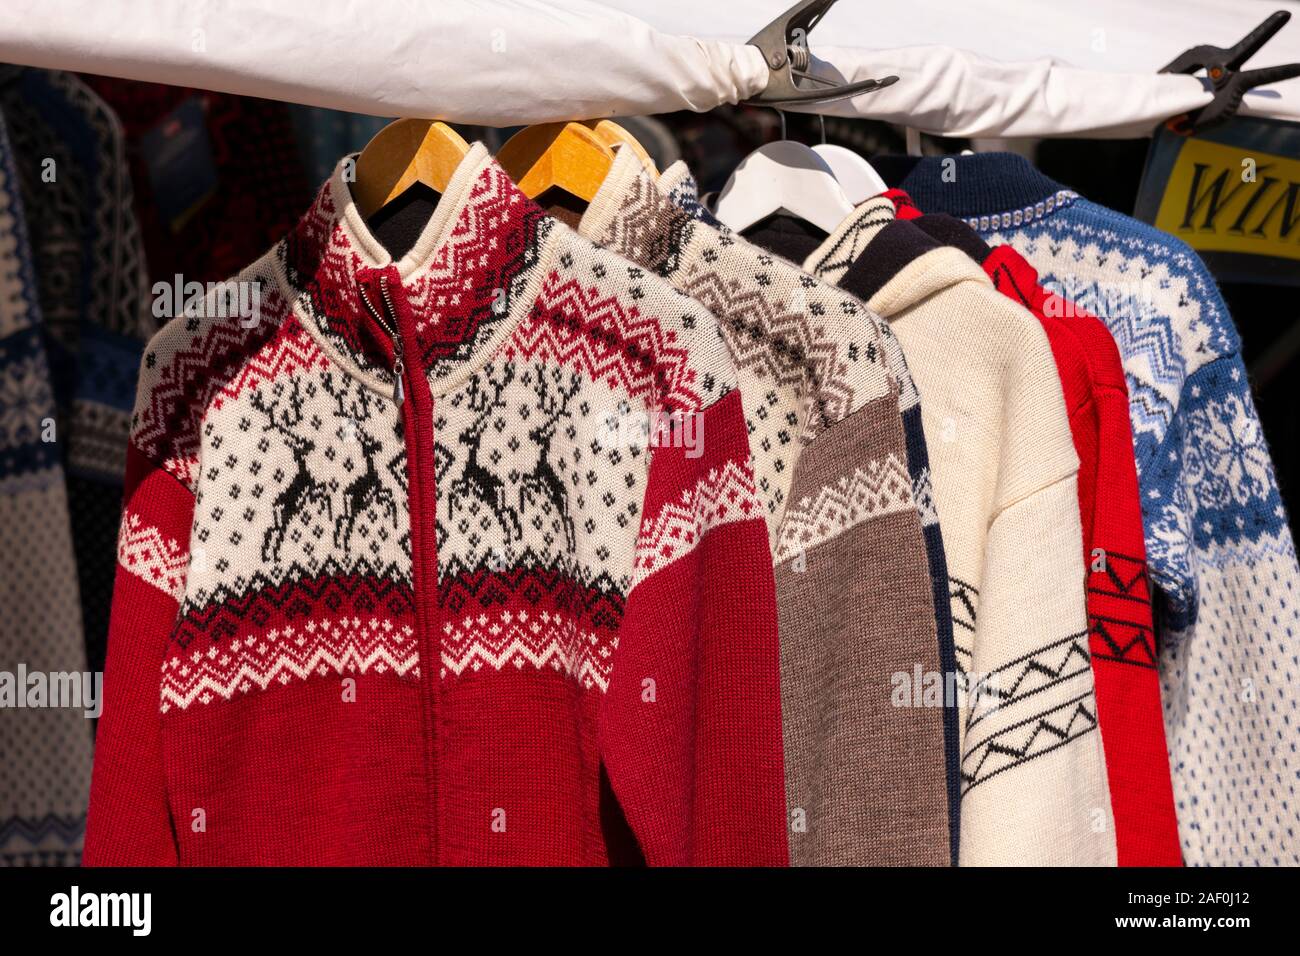 TROMSØ, NORWEGEN - Norwegische wolle Stricken Pullover für Verkauf am Markt im Freien. Stockfoto